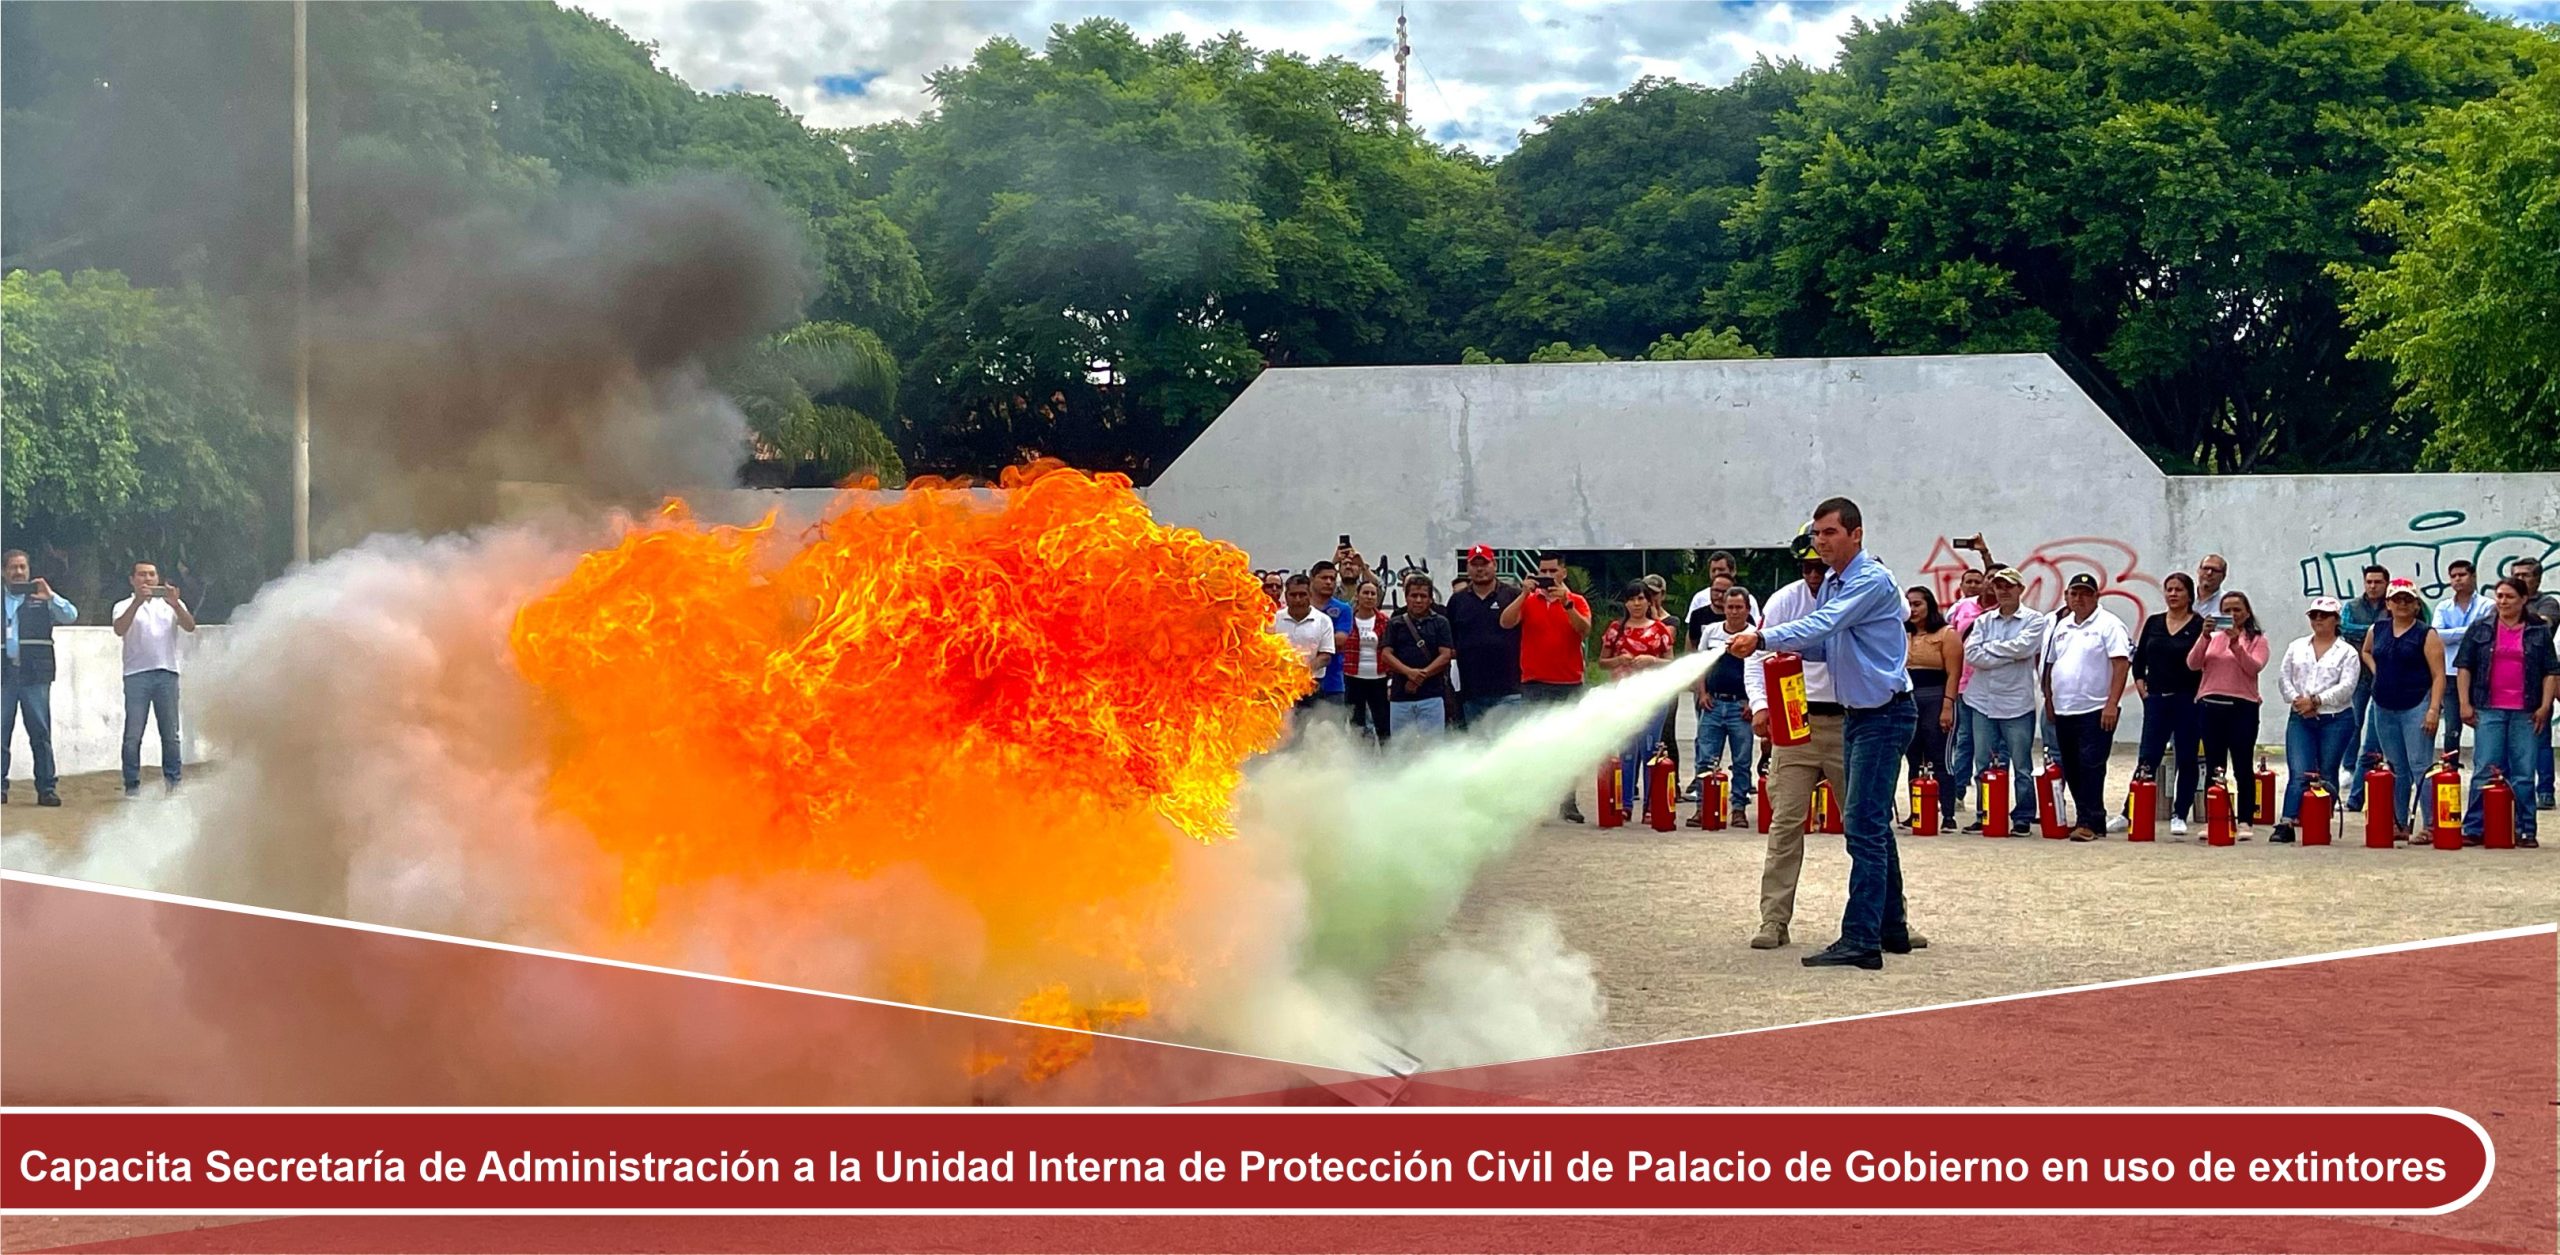 Capacita Secretaría de Administración a la Unidad Interna de Protección Civil de Palacio de Gobierno en uso de extintores